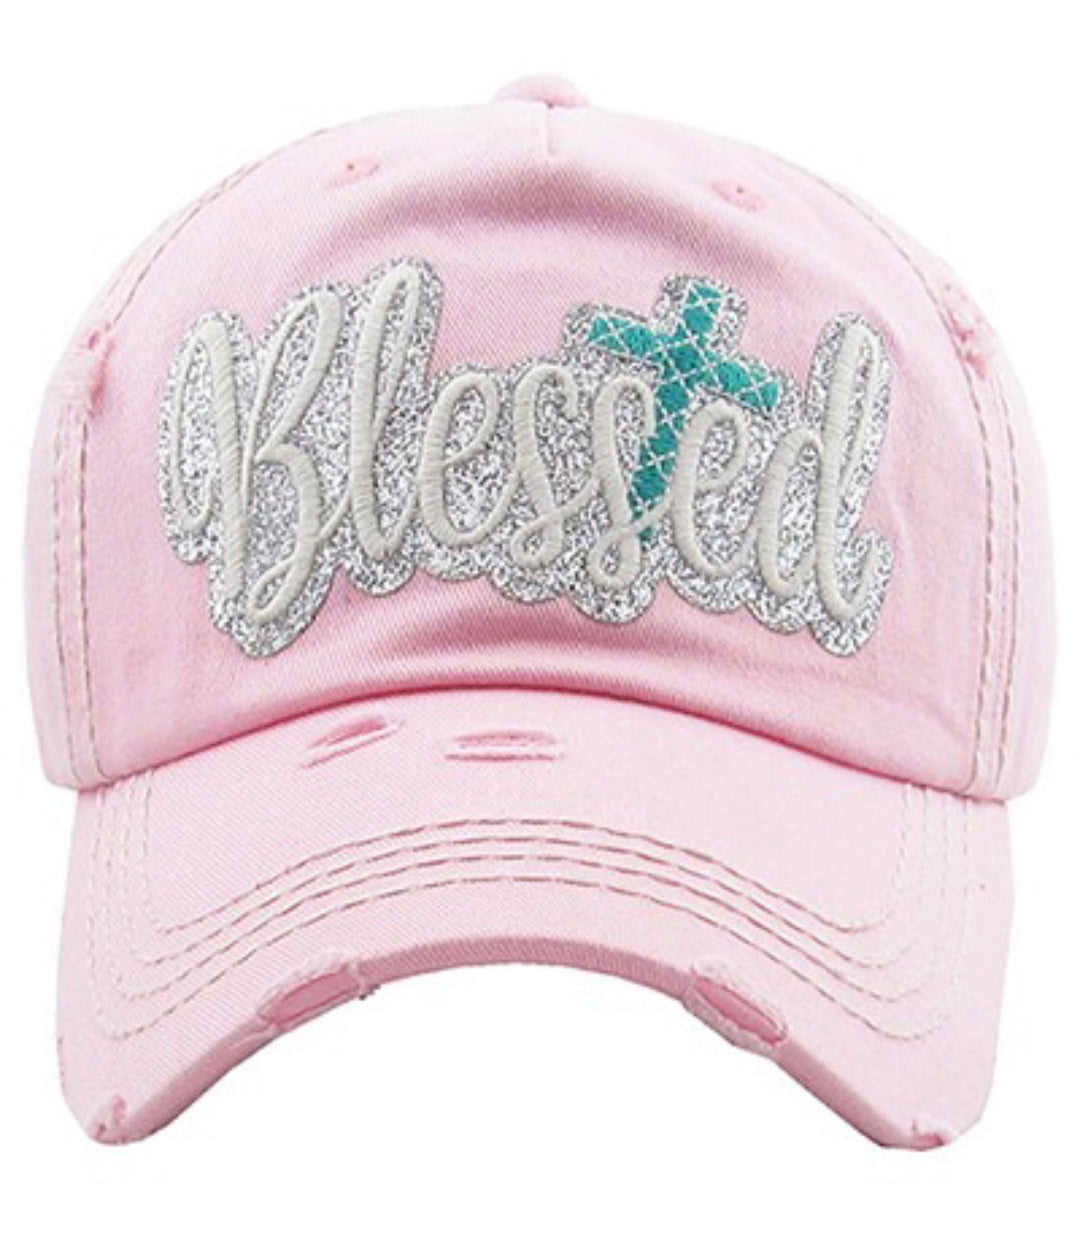 Blessed Vintage Baseball Cap Hat - Pink